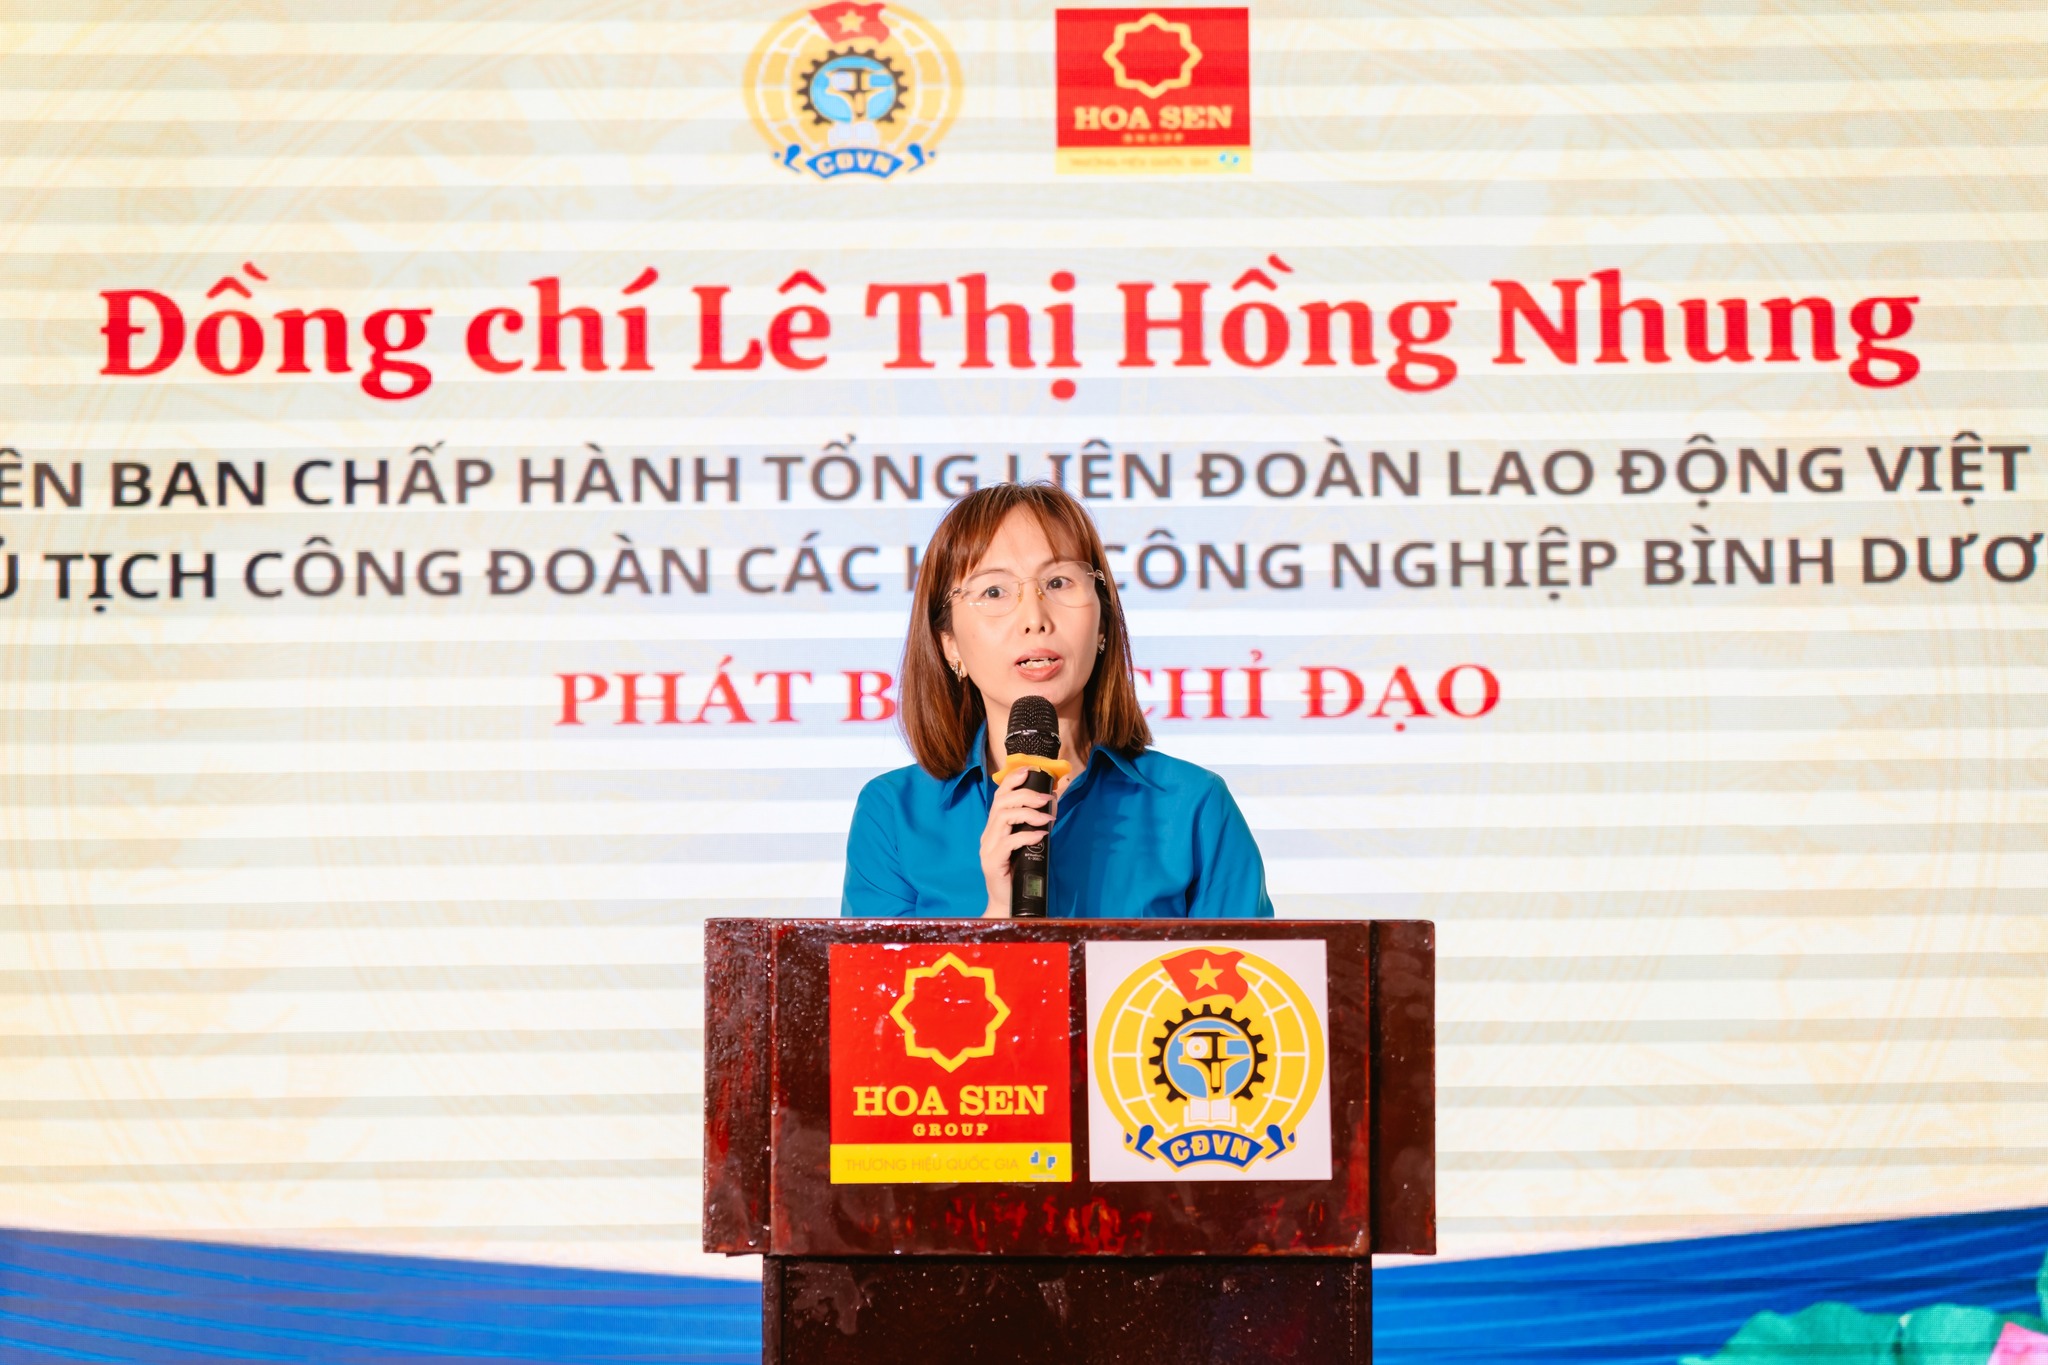 Đồng chí Lê Thị Hồng Nhung - Ủy viên Ban Chấp hành Tổng Liên đoàn Lao động Việt Nam, Chủ tịch Công đoàn CKCN Bình Dương phát biểu chúc mừng và chỉ đạo tại chương trình